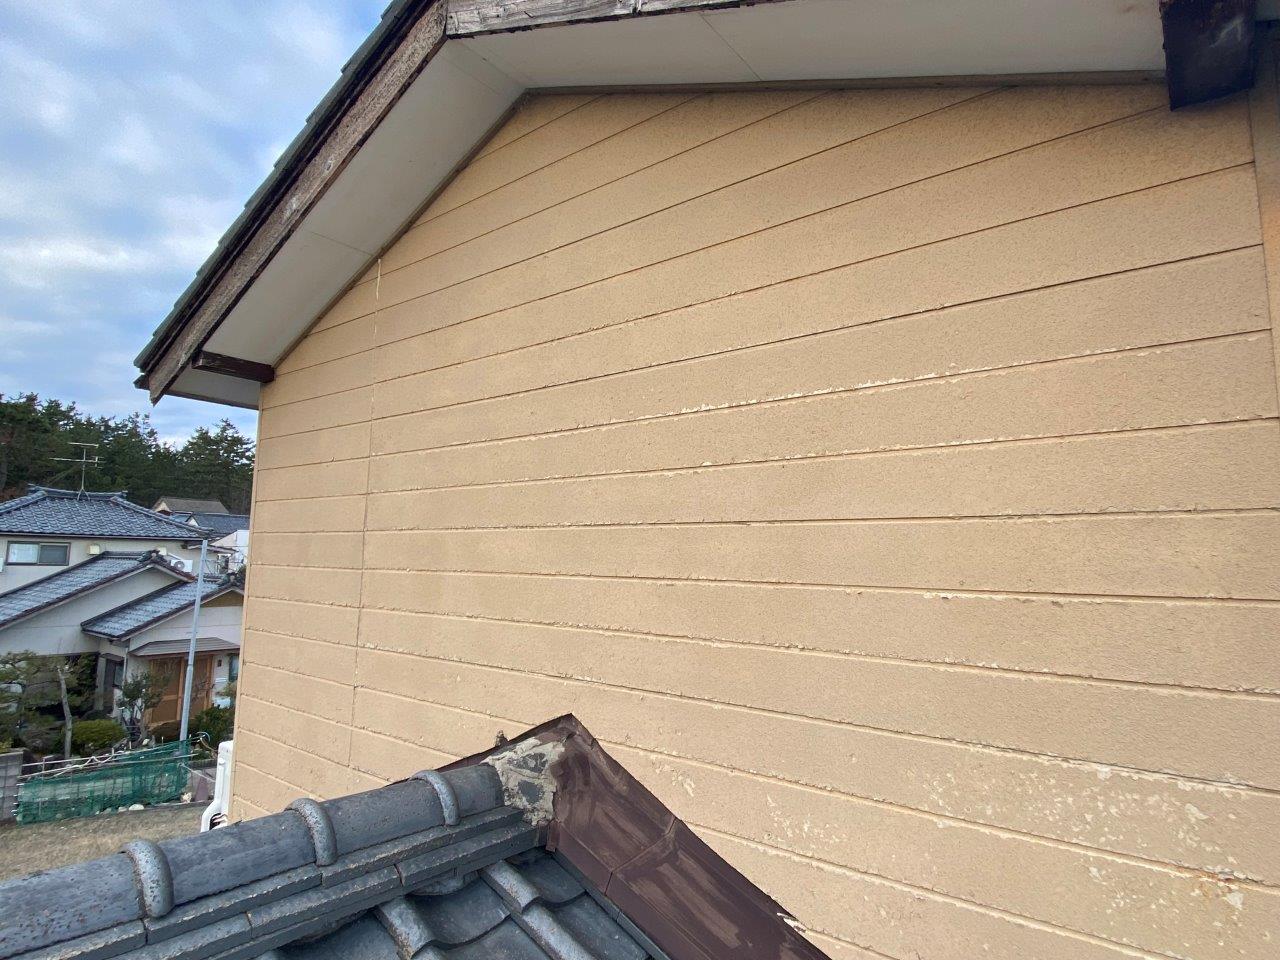 新潟市西区にて和室天井から雨漏れしているので見に来て欲しいとお問い合わせを頂きました